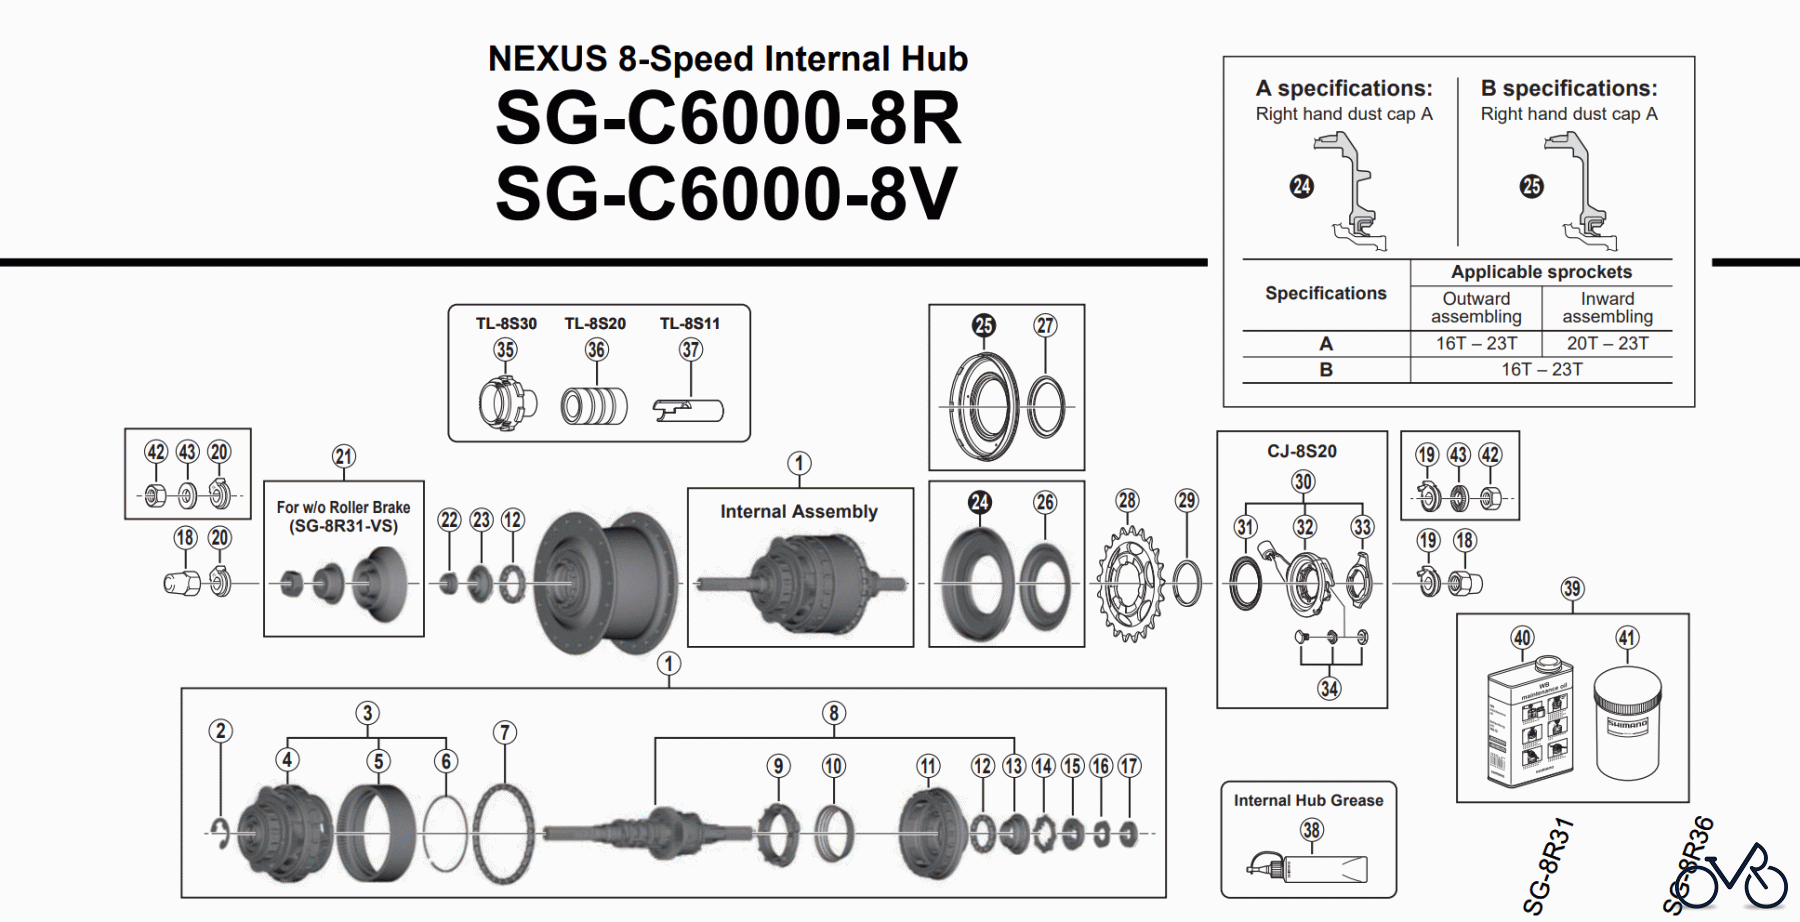  Shimano SG Getriebenabe /Nabenschaltung SG-C6000-8R NEXUS 8-Speed Internal Hub